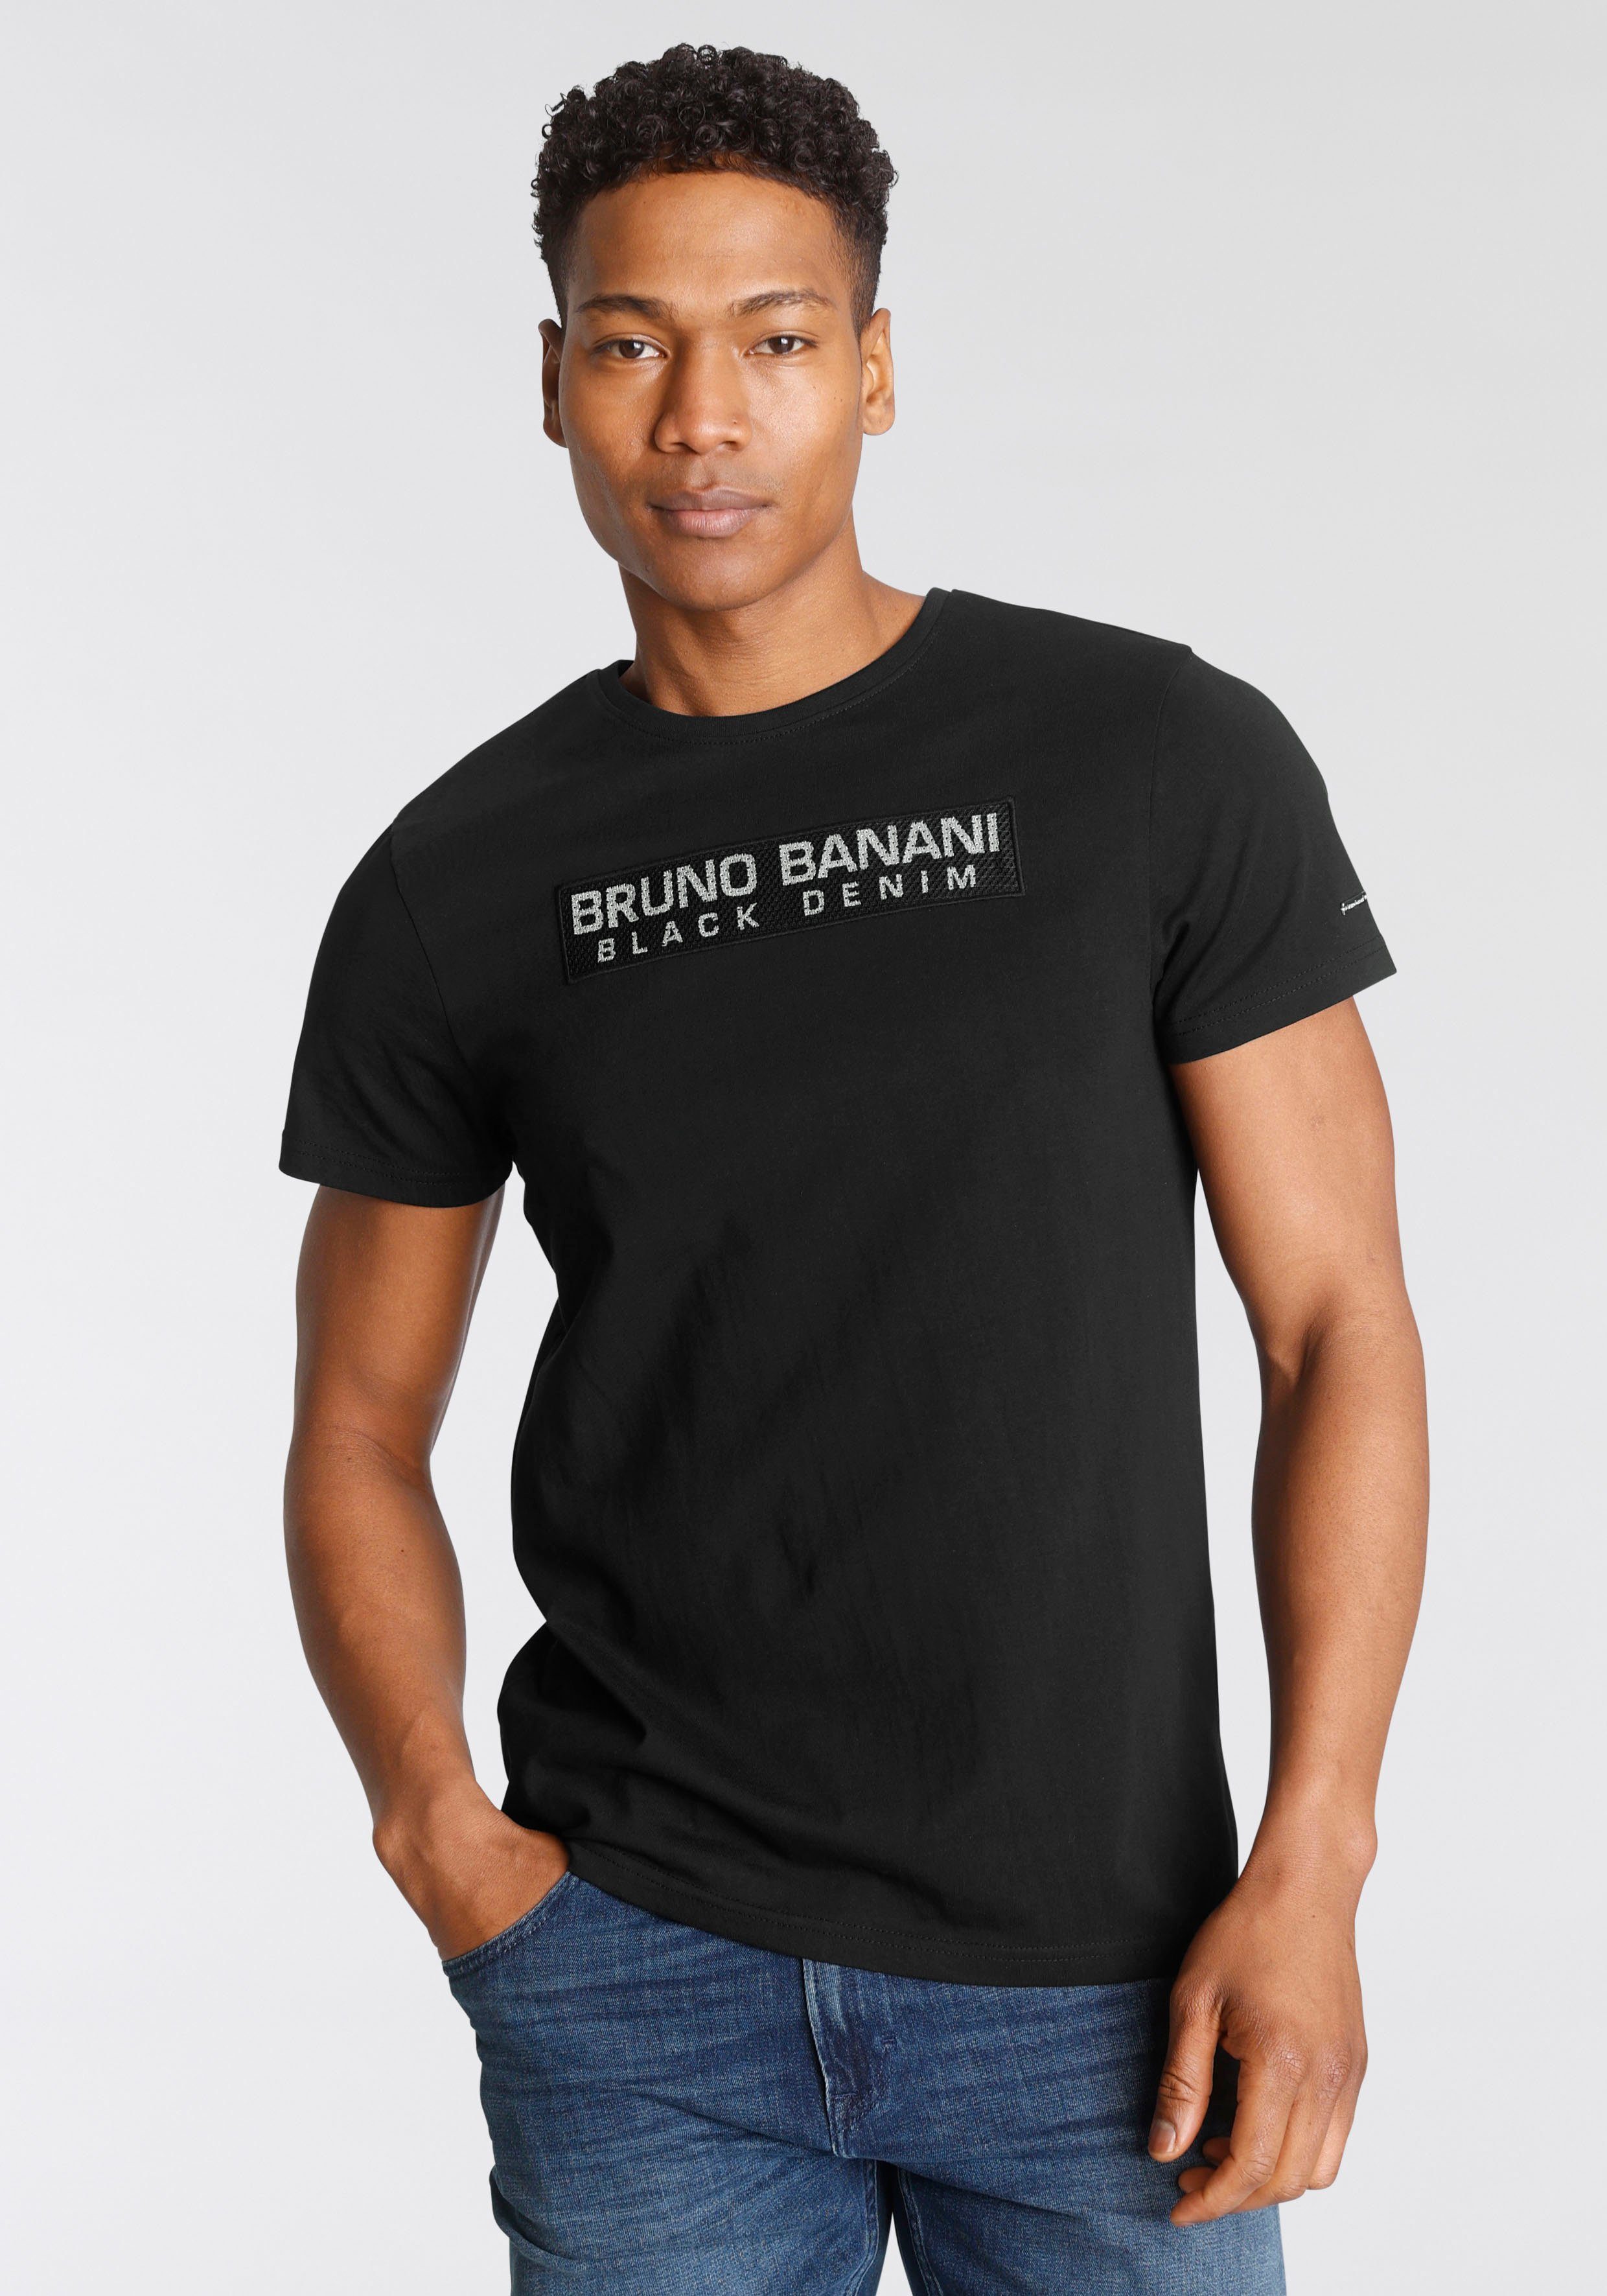 Bruno Banani T-Shirt mit Mesh Einsatz online kaufen | OTTO